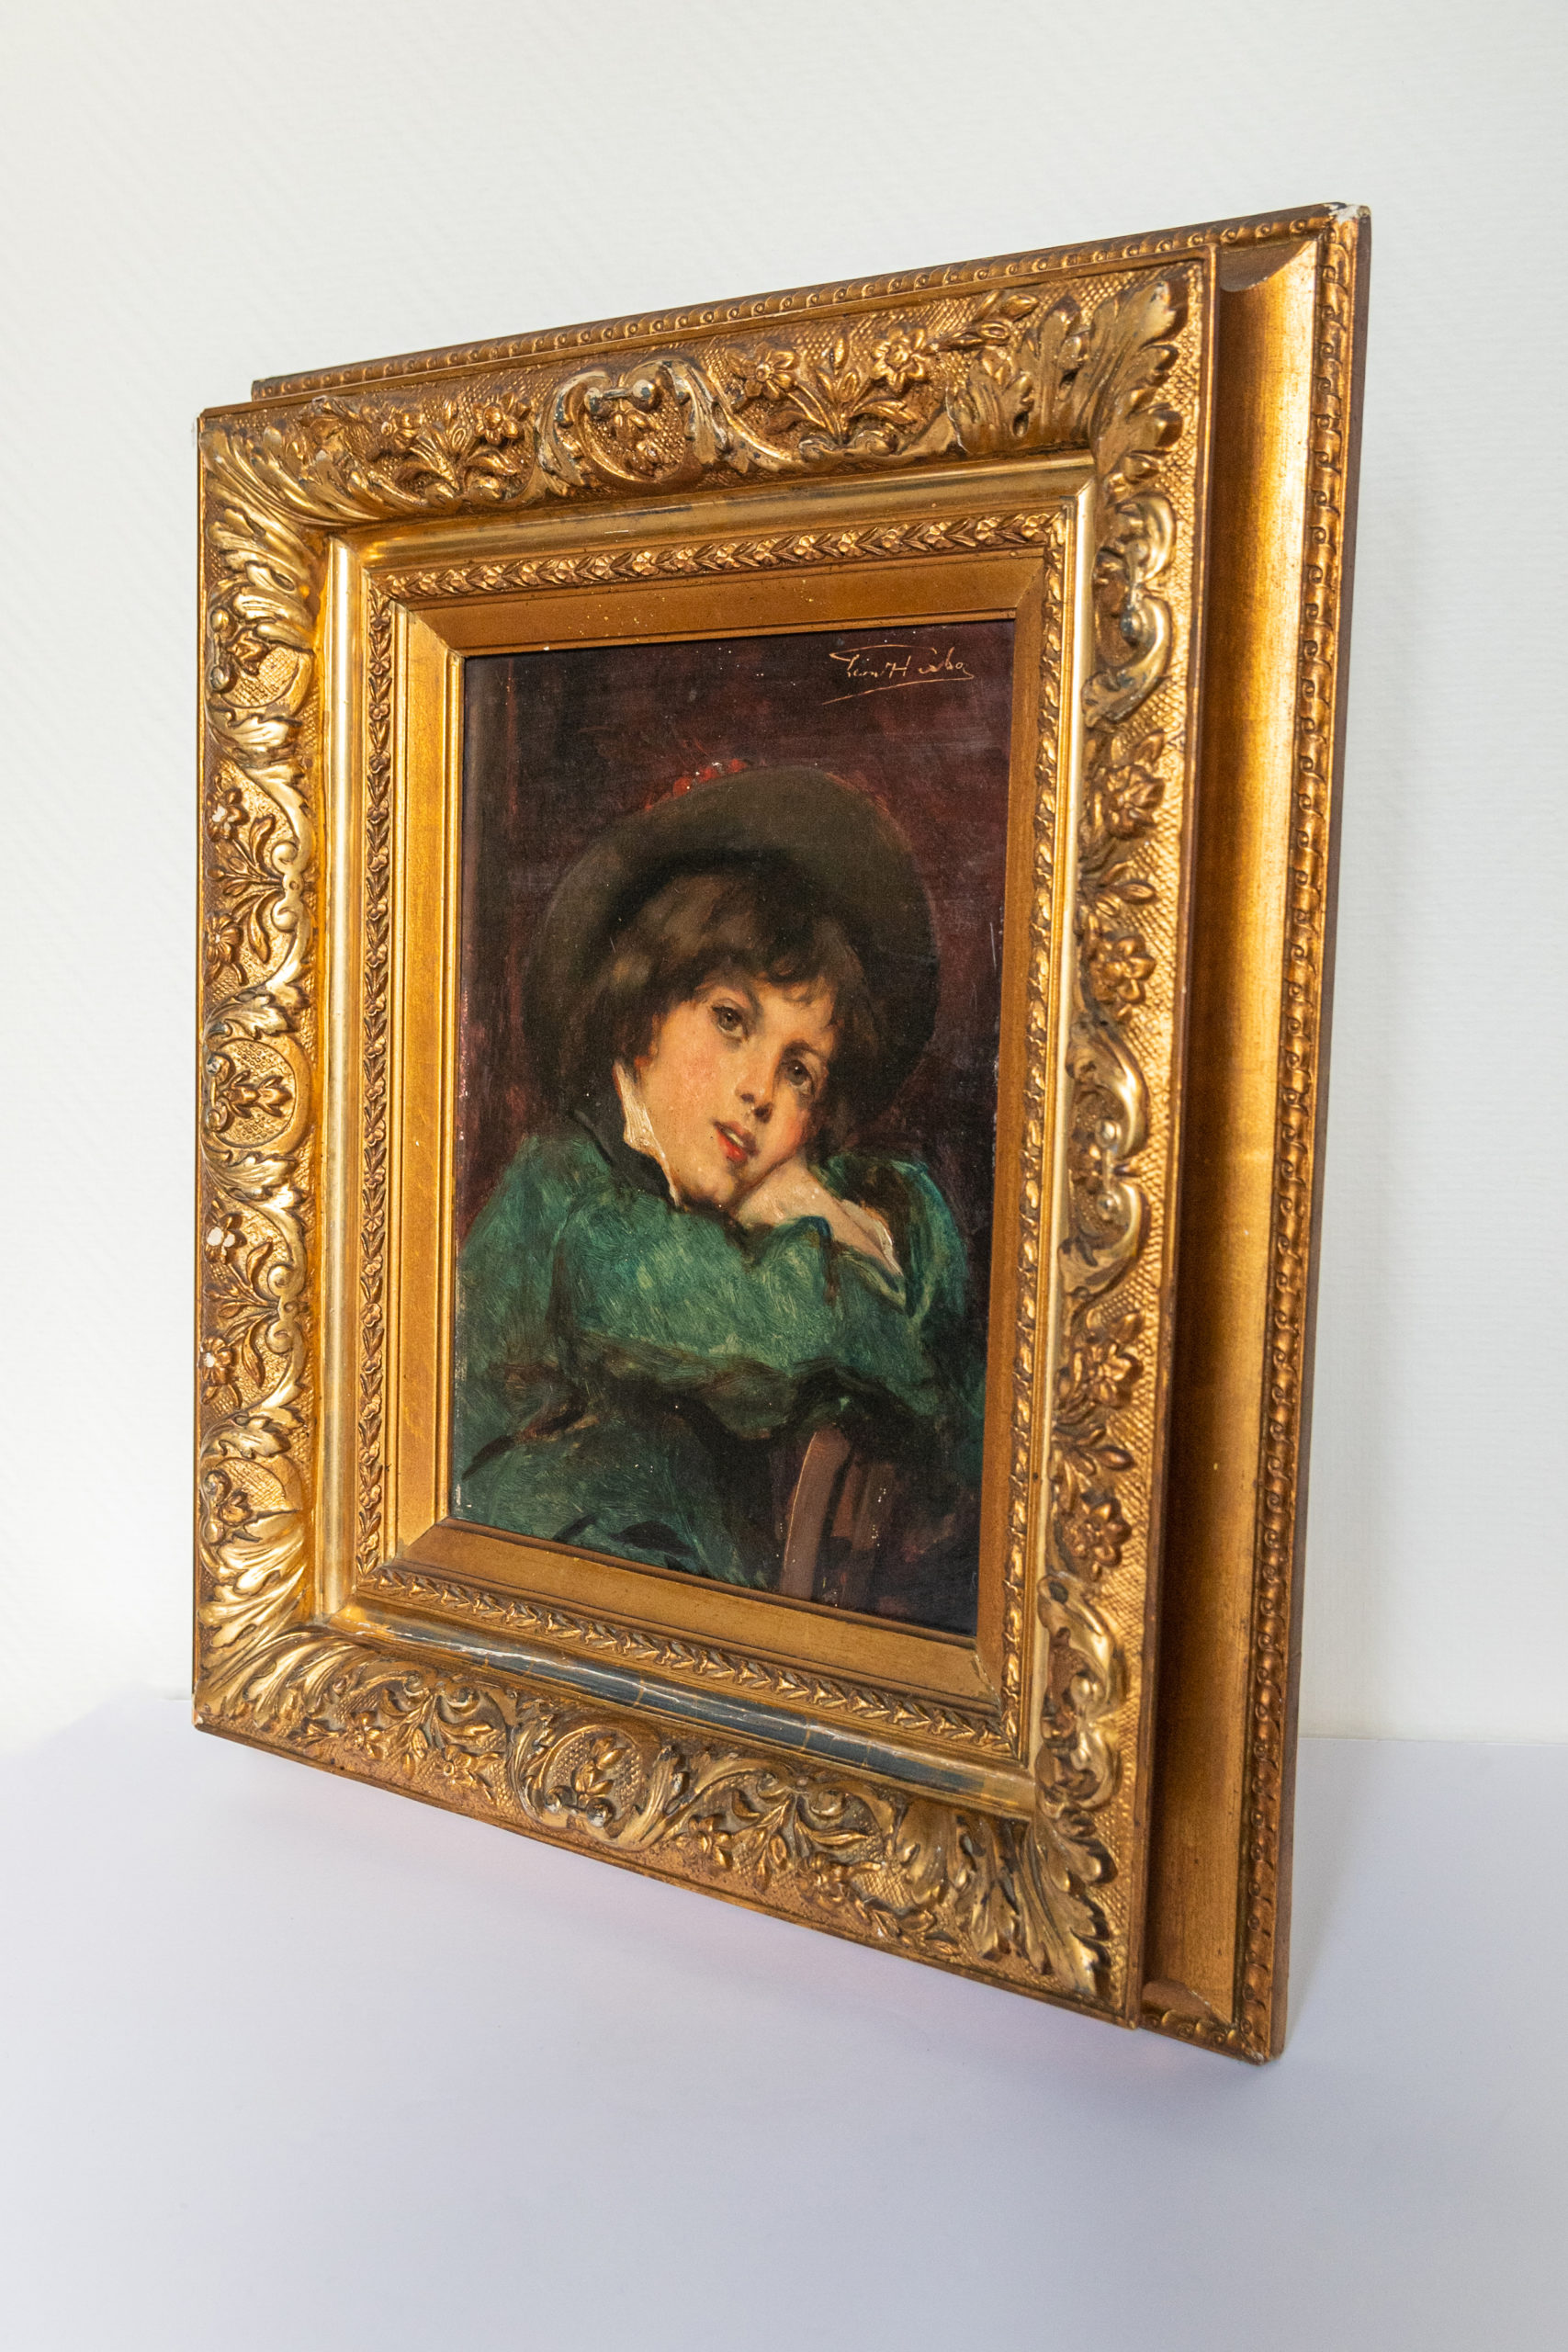 Leon-herbo-peinture-XIXe-jeune-garcon-portrait-panneau-aurore-morisse-antiquaire-marchand-art-expertise-liège-affaire-conclue2